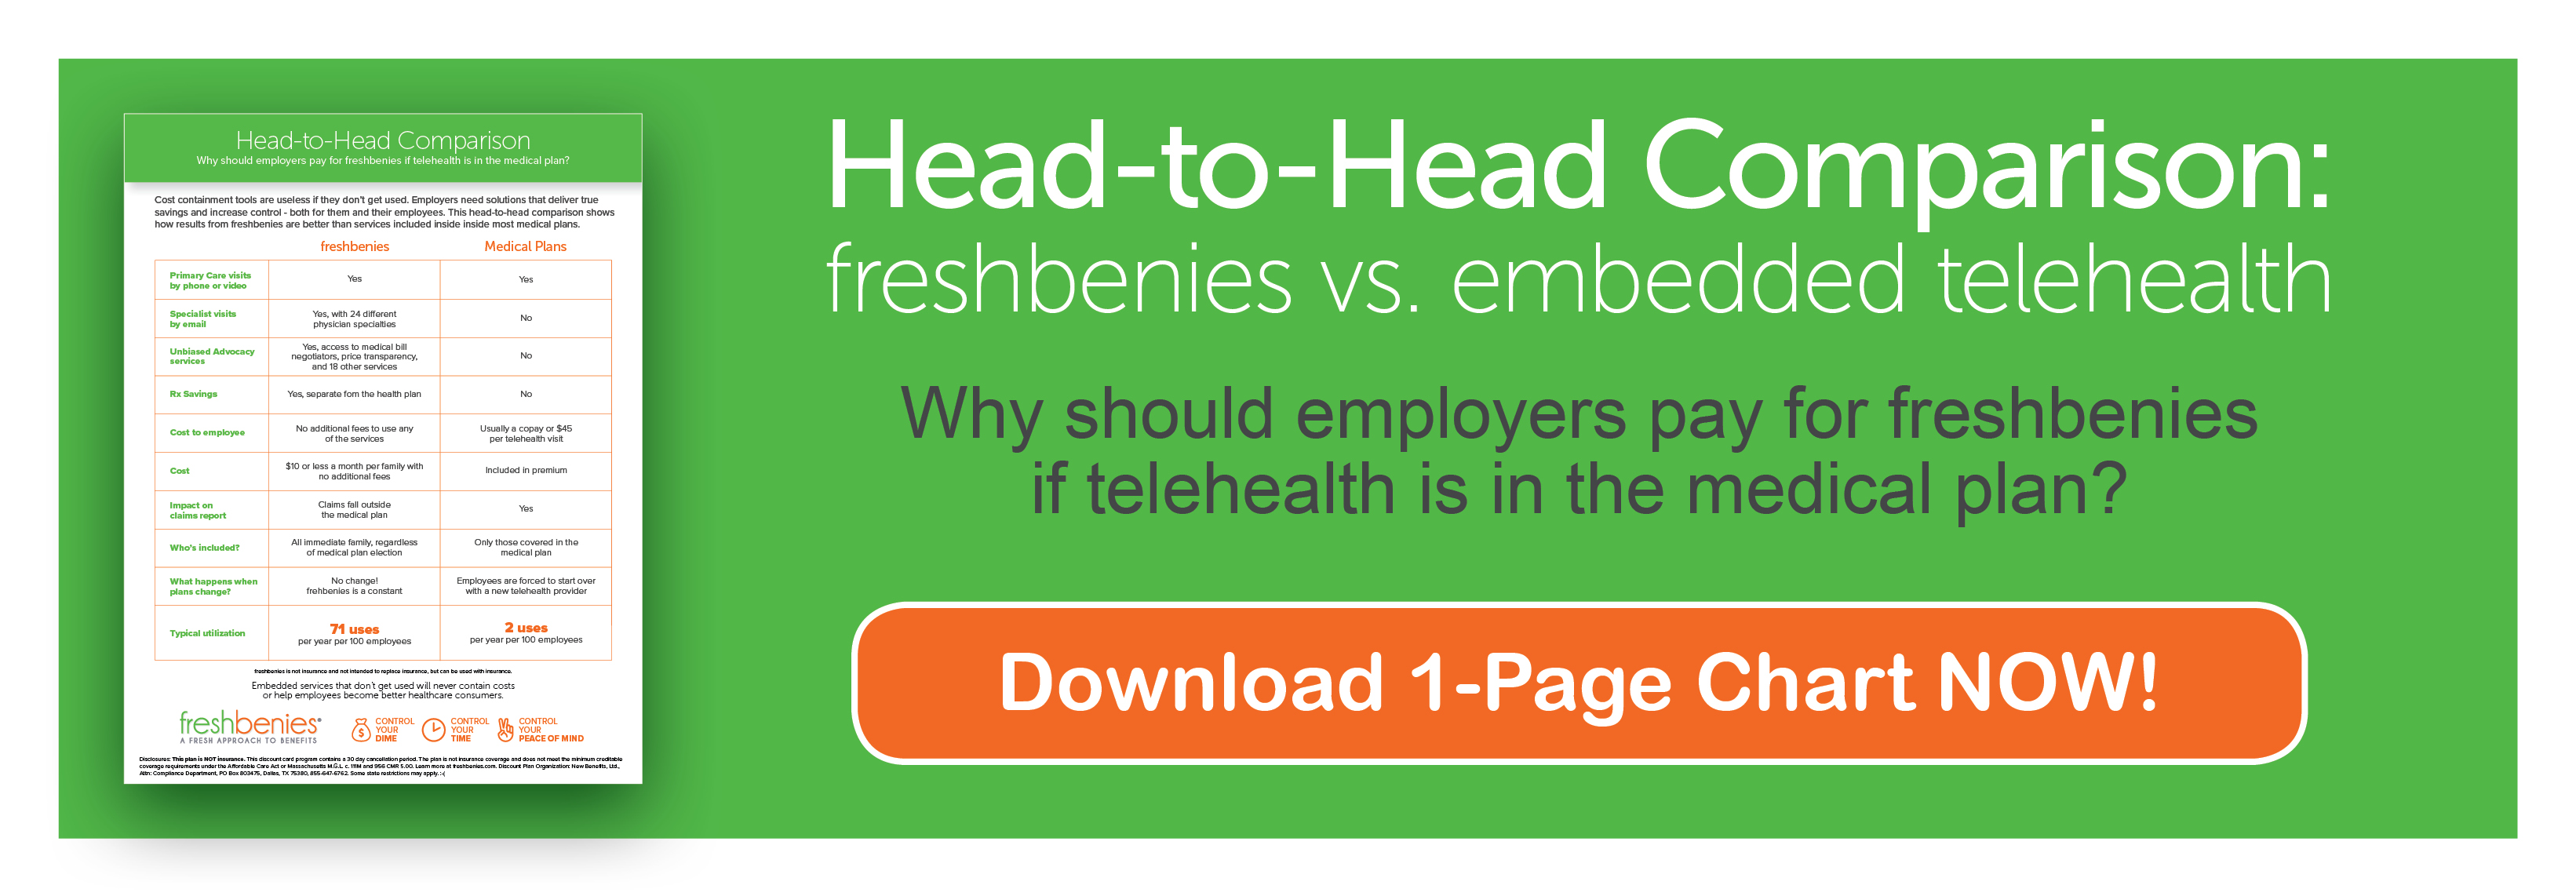 freshbenies vs embedded telehealth chart